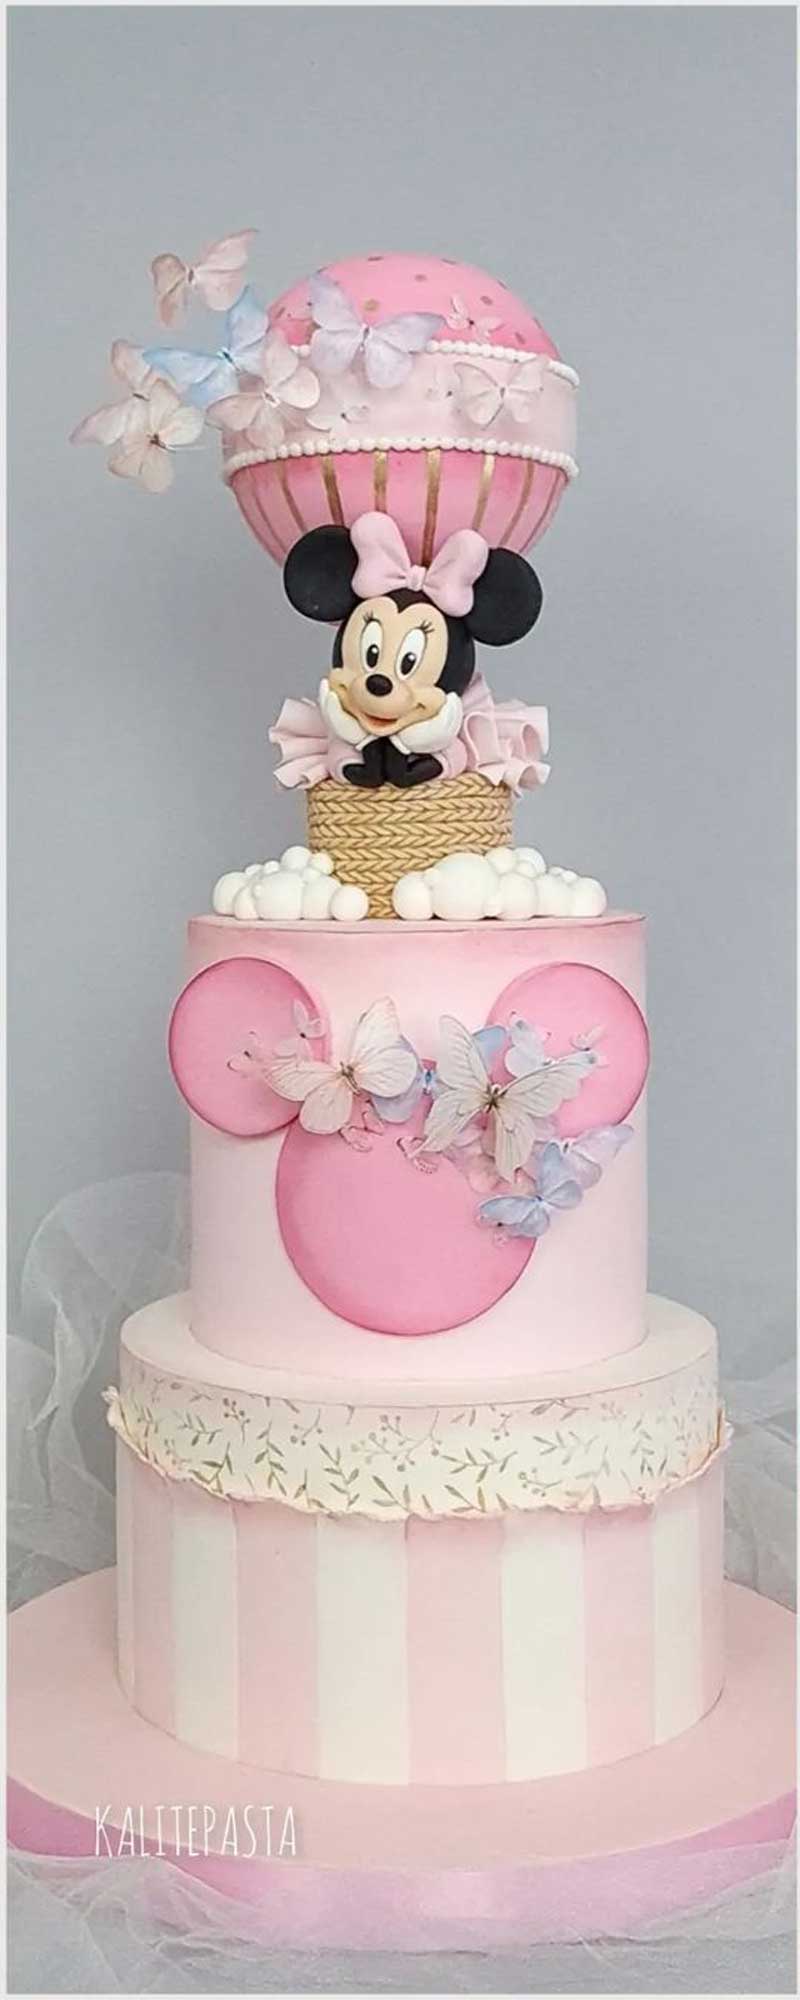 Minnie-Mouse-Hot-Air-Balloon-Cake